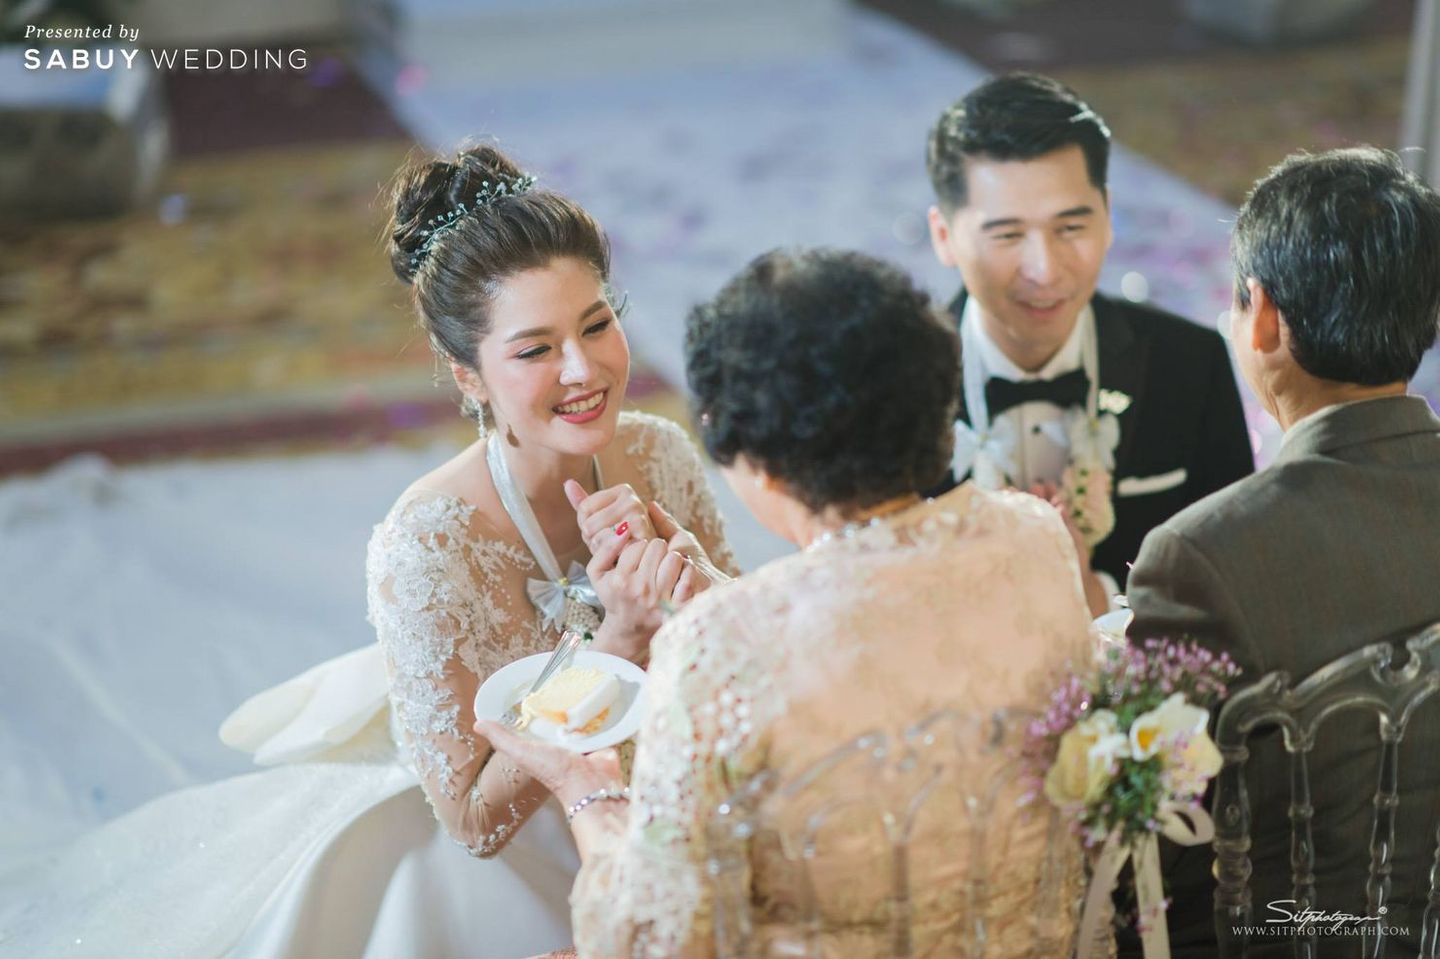 งานแต่งงาน,สถานที่แต่งงาน,โรงแรม,เจ้าสาว,ชุดเจ้าสาว,เจ้าบ่าว,ชุดเจ้าบ่าว,ตกแต่งงาน,จัดดอกไม้งานแต่ง รีวิวงานแต่งสุดอบอุ่นแห่งปี ‘We are Family’ งานนี้ห้อมล้อมด้วยรัก @Mandarin Oriental